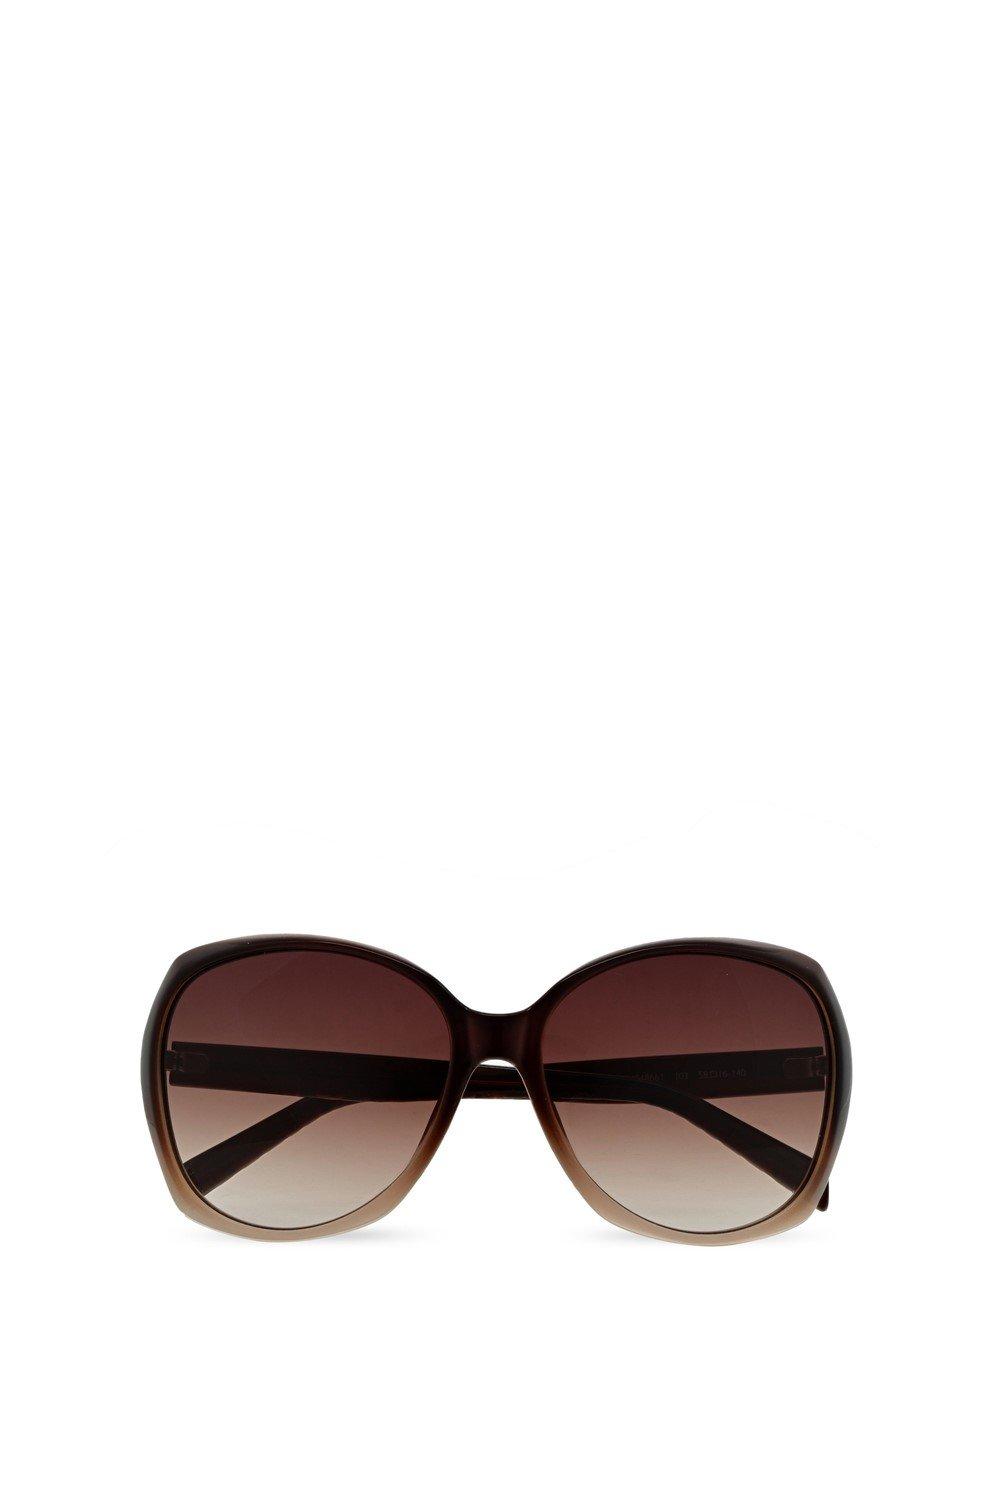 KM5055 Солнцезащитные очки Karen Millen, коричневый цена и фото